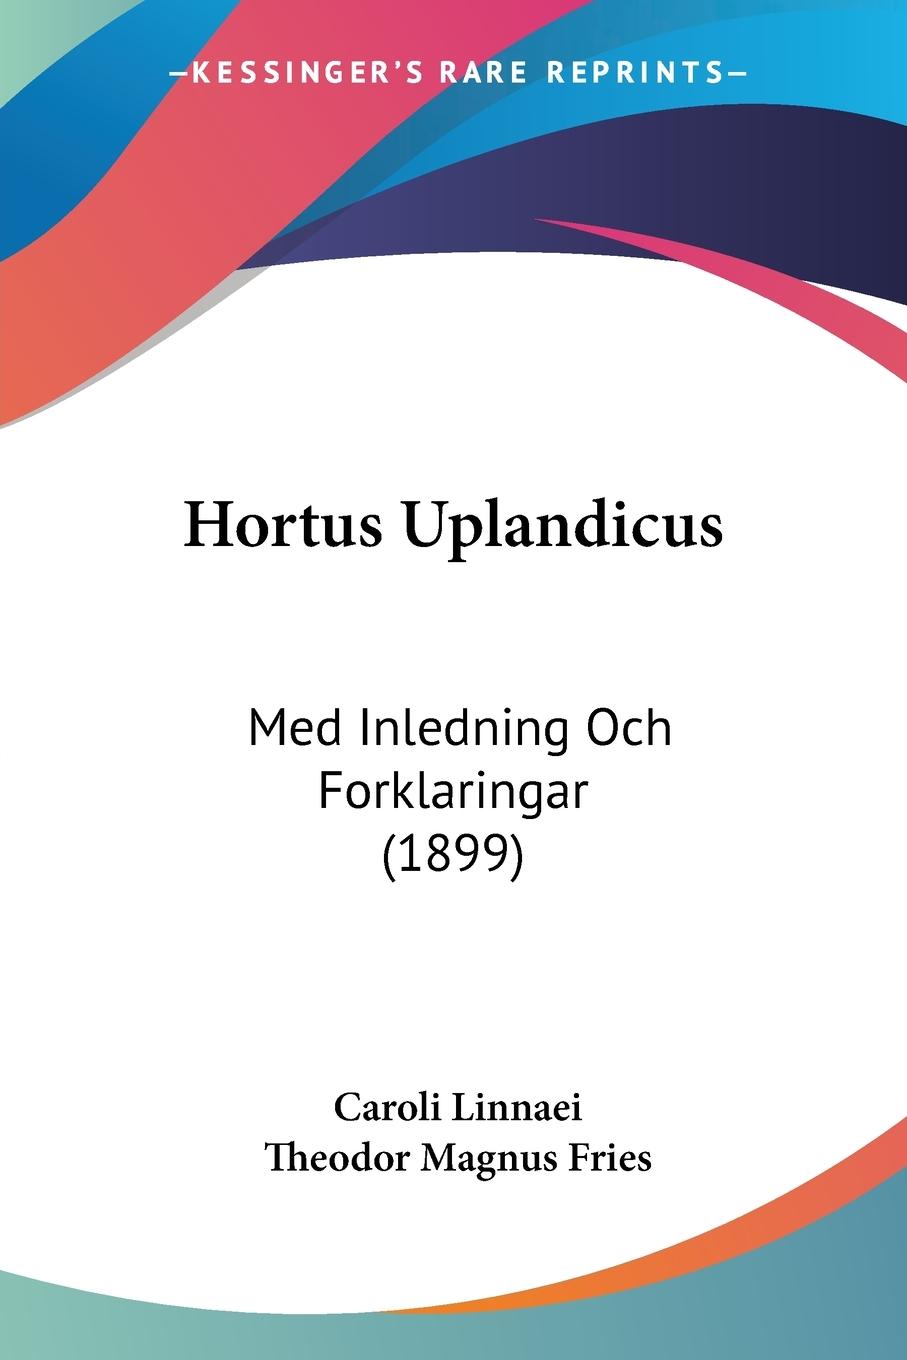 Hortus Uplandicus - Linnaei, Caroli Fries, Theodor Magnus